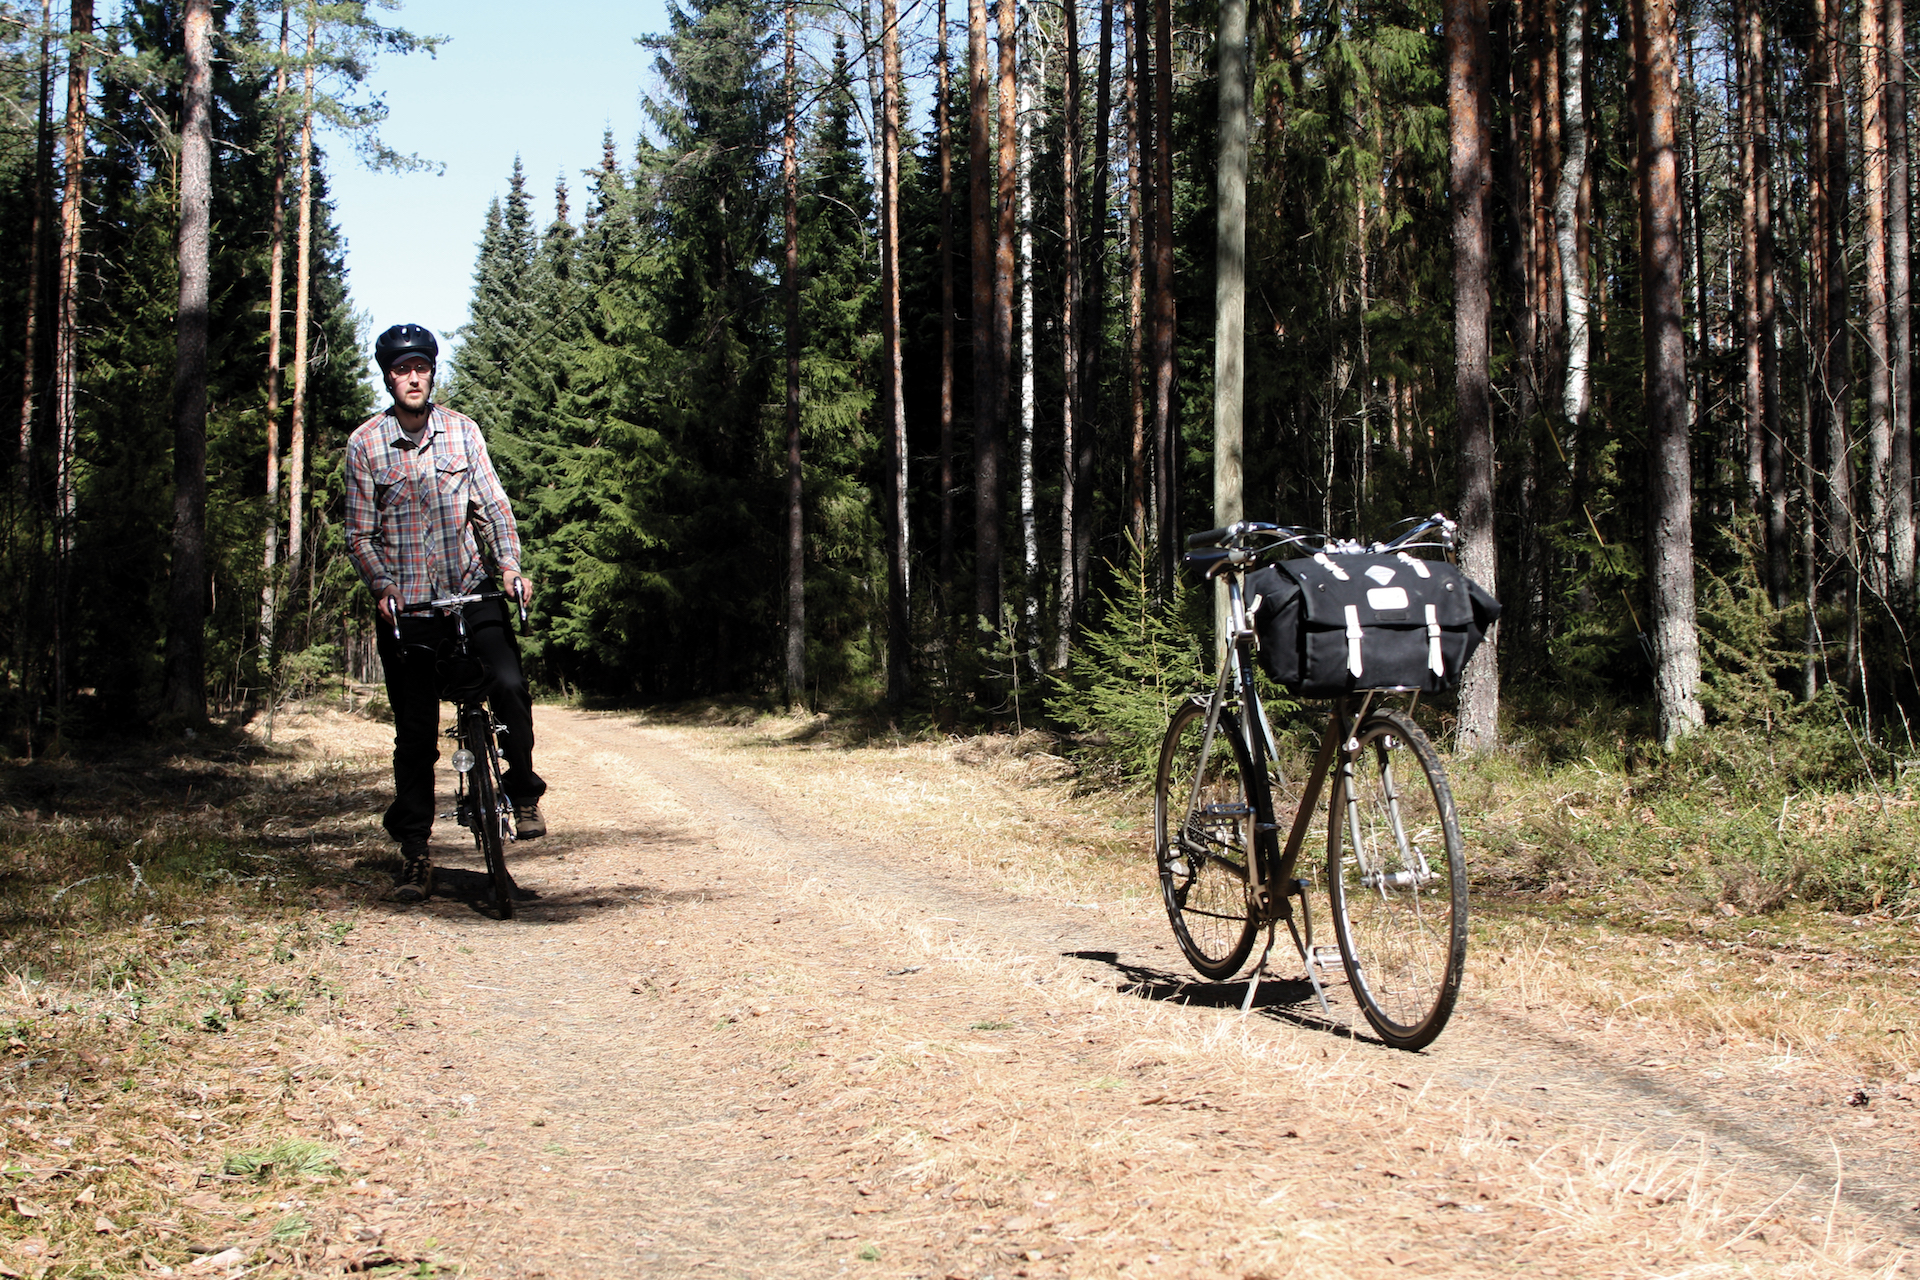 Mikko Hippönen mit seinem Pelago-Fahrrad. Das obere Bild zeigt seinen Bruder Timo Hippönen